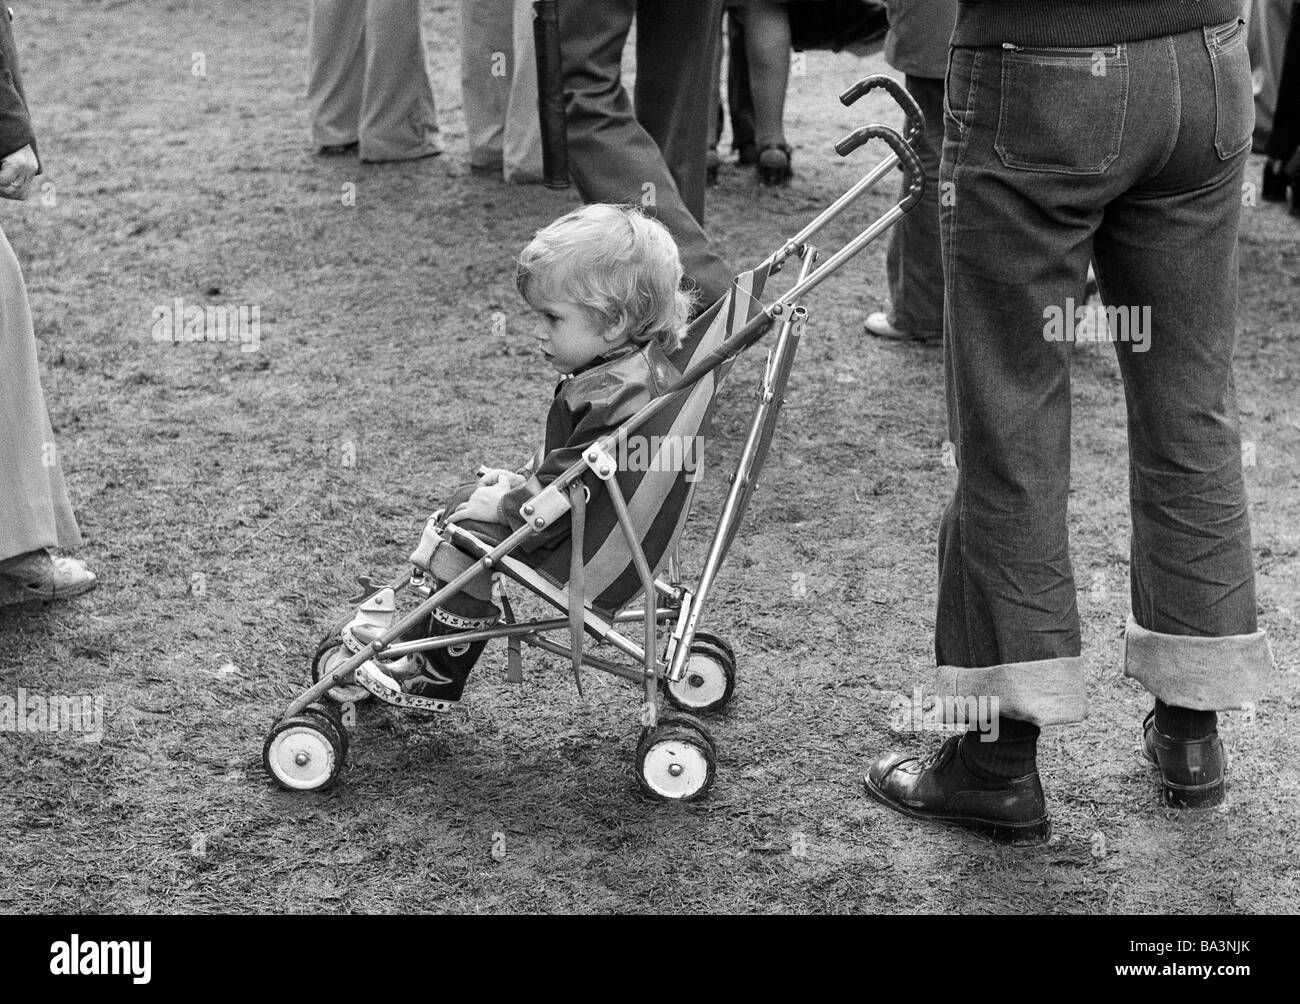 70er Jahre, schwarz / weiß Foto, Menschen, kleiner Junge in einem Buggy, im  Alter von 2 bis 3 Jahre Stockfotografie - Alamy